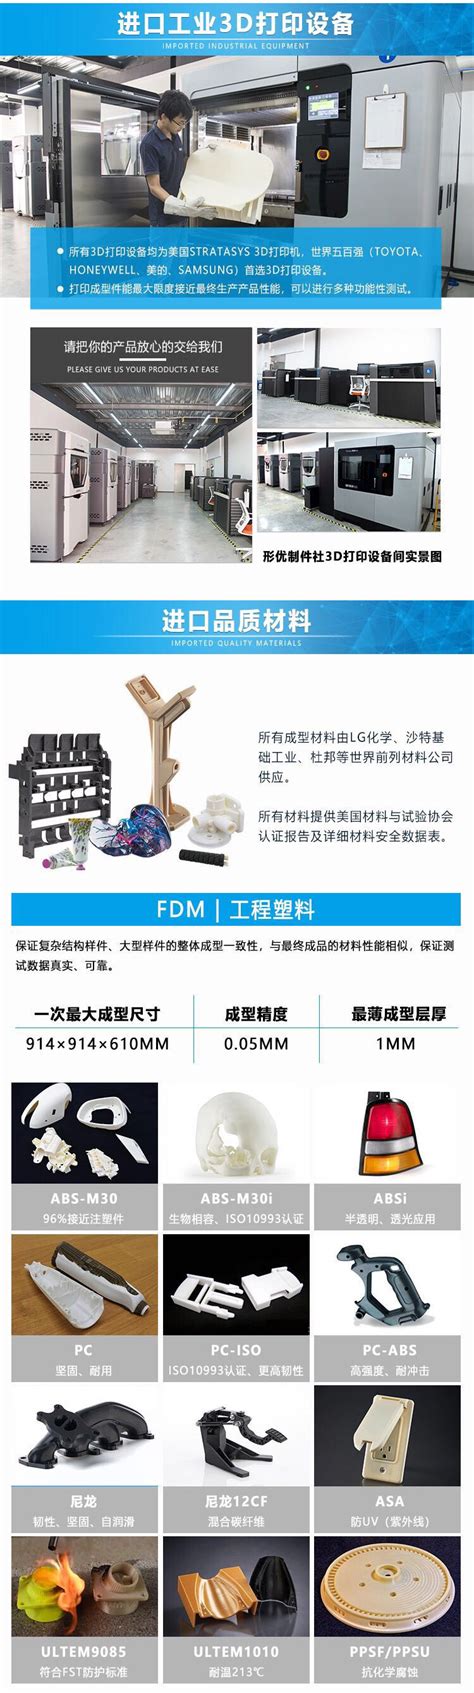 上海3D打印(厂家,公司,加工,制作,咨询,加工,设计,价格,哪家好,地址,电话,多少钱) - 上海亚敏模型有限公司(上海)